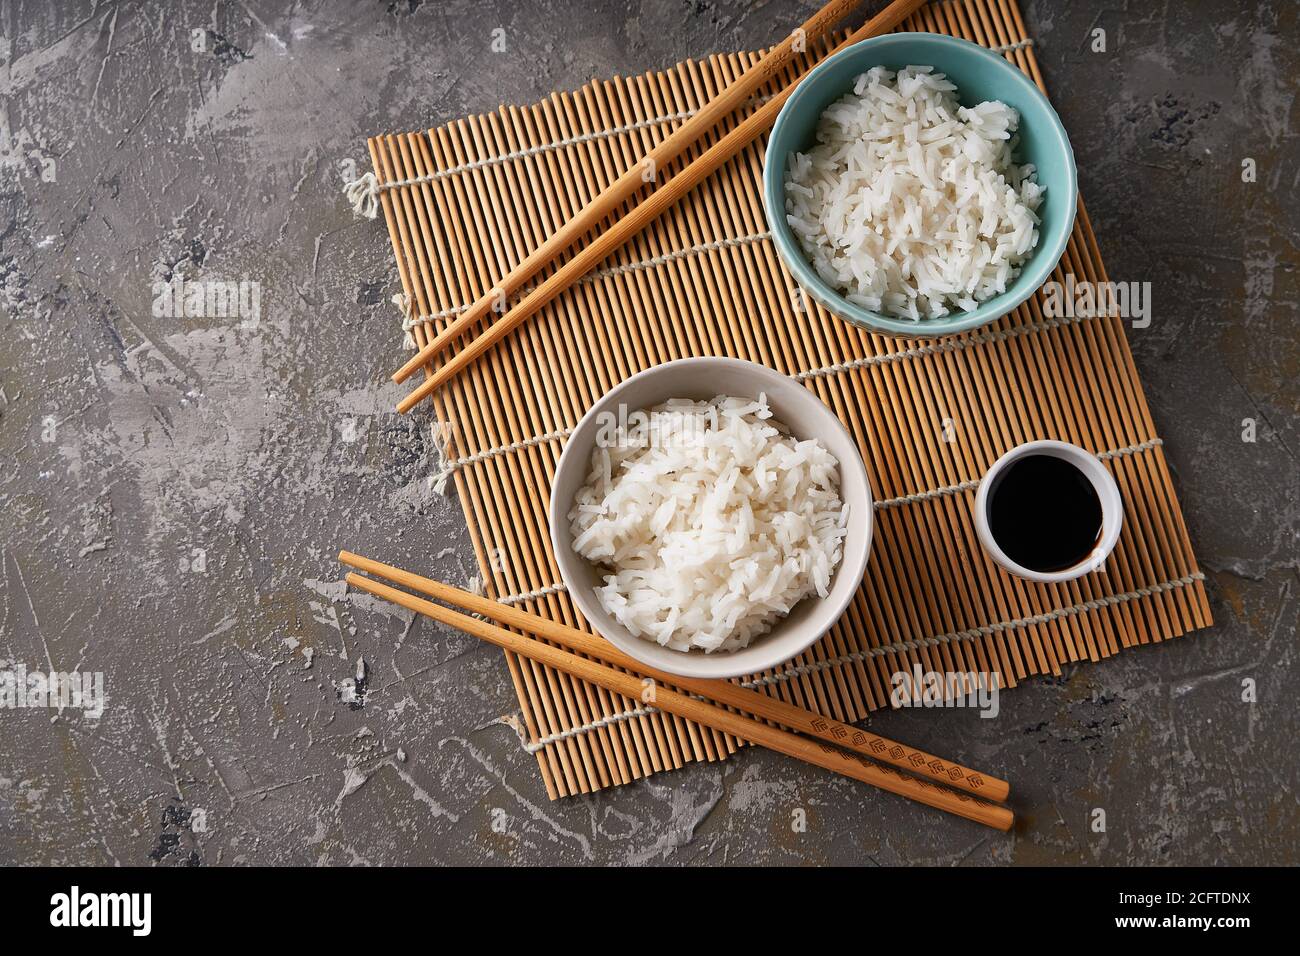 Riz dans un bol en porcelaine, avec baguettes japonaises, sauce soja, servi sur une table en pierre grise Banque D'Images